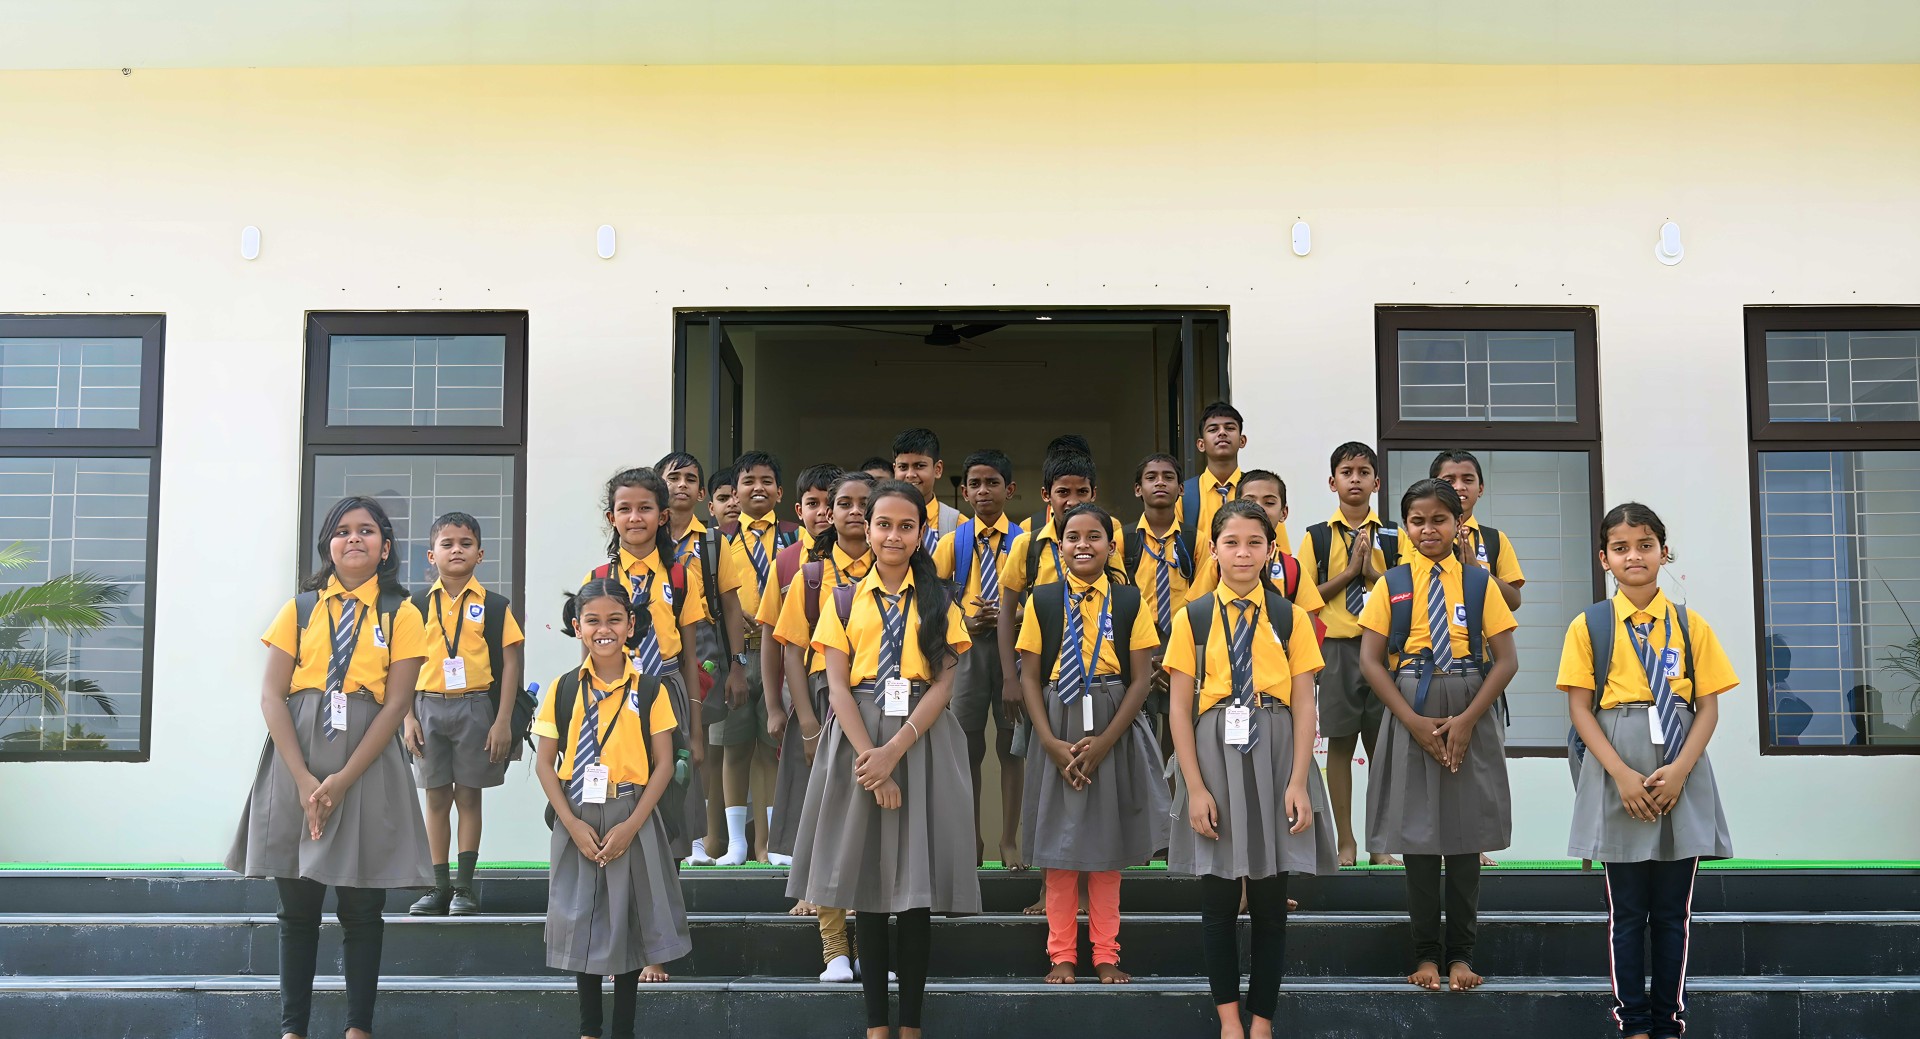 Students of Utkal Gaurav International School